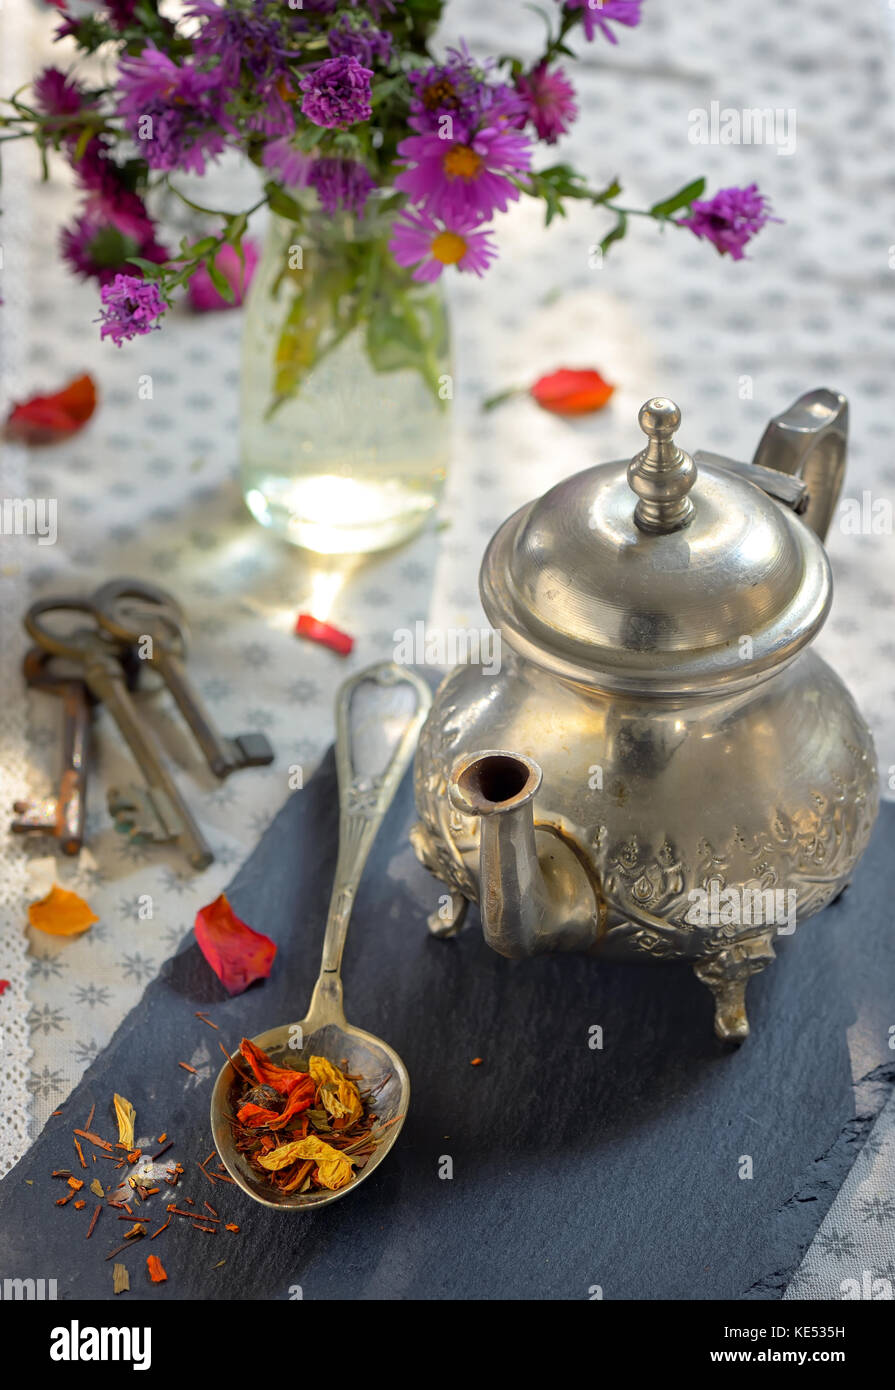 Asciugare le foglie di tè sul cucchiaio sulla piastra di ardesia Foto Stock